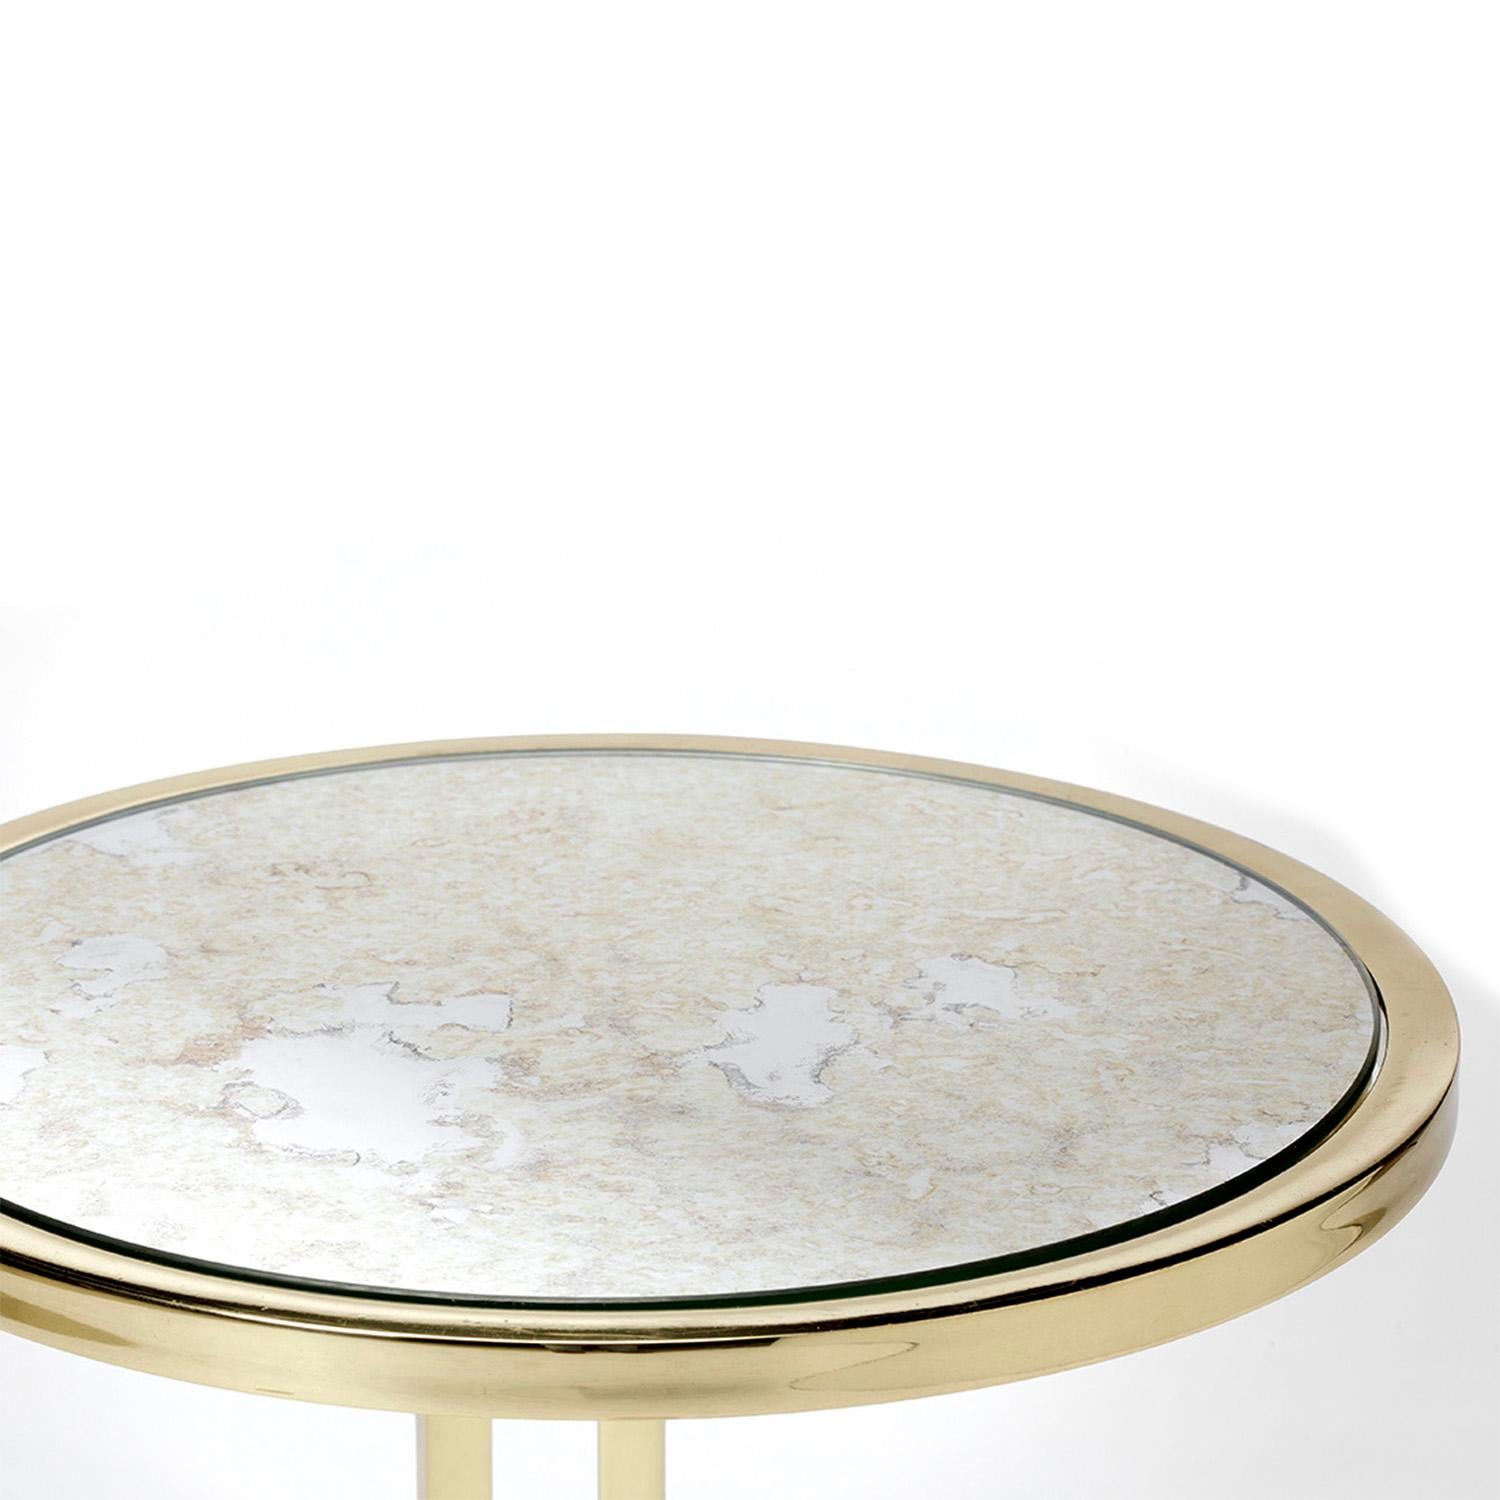 Julia Beistelltisch, poliertes Messing und antiker Spiegel, handgefertigt von Duistt

Der Beistelltisch JULIA ist ein auffälliges und elegantes Stück mit einer polierten Messingstruktur und antiken Spiegelplatten, die ihn zum perfekten Beistell-